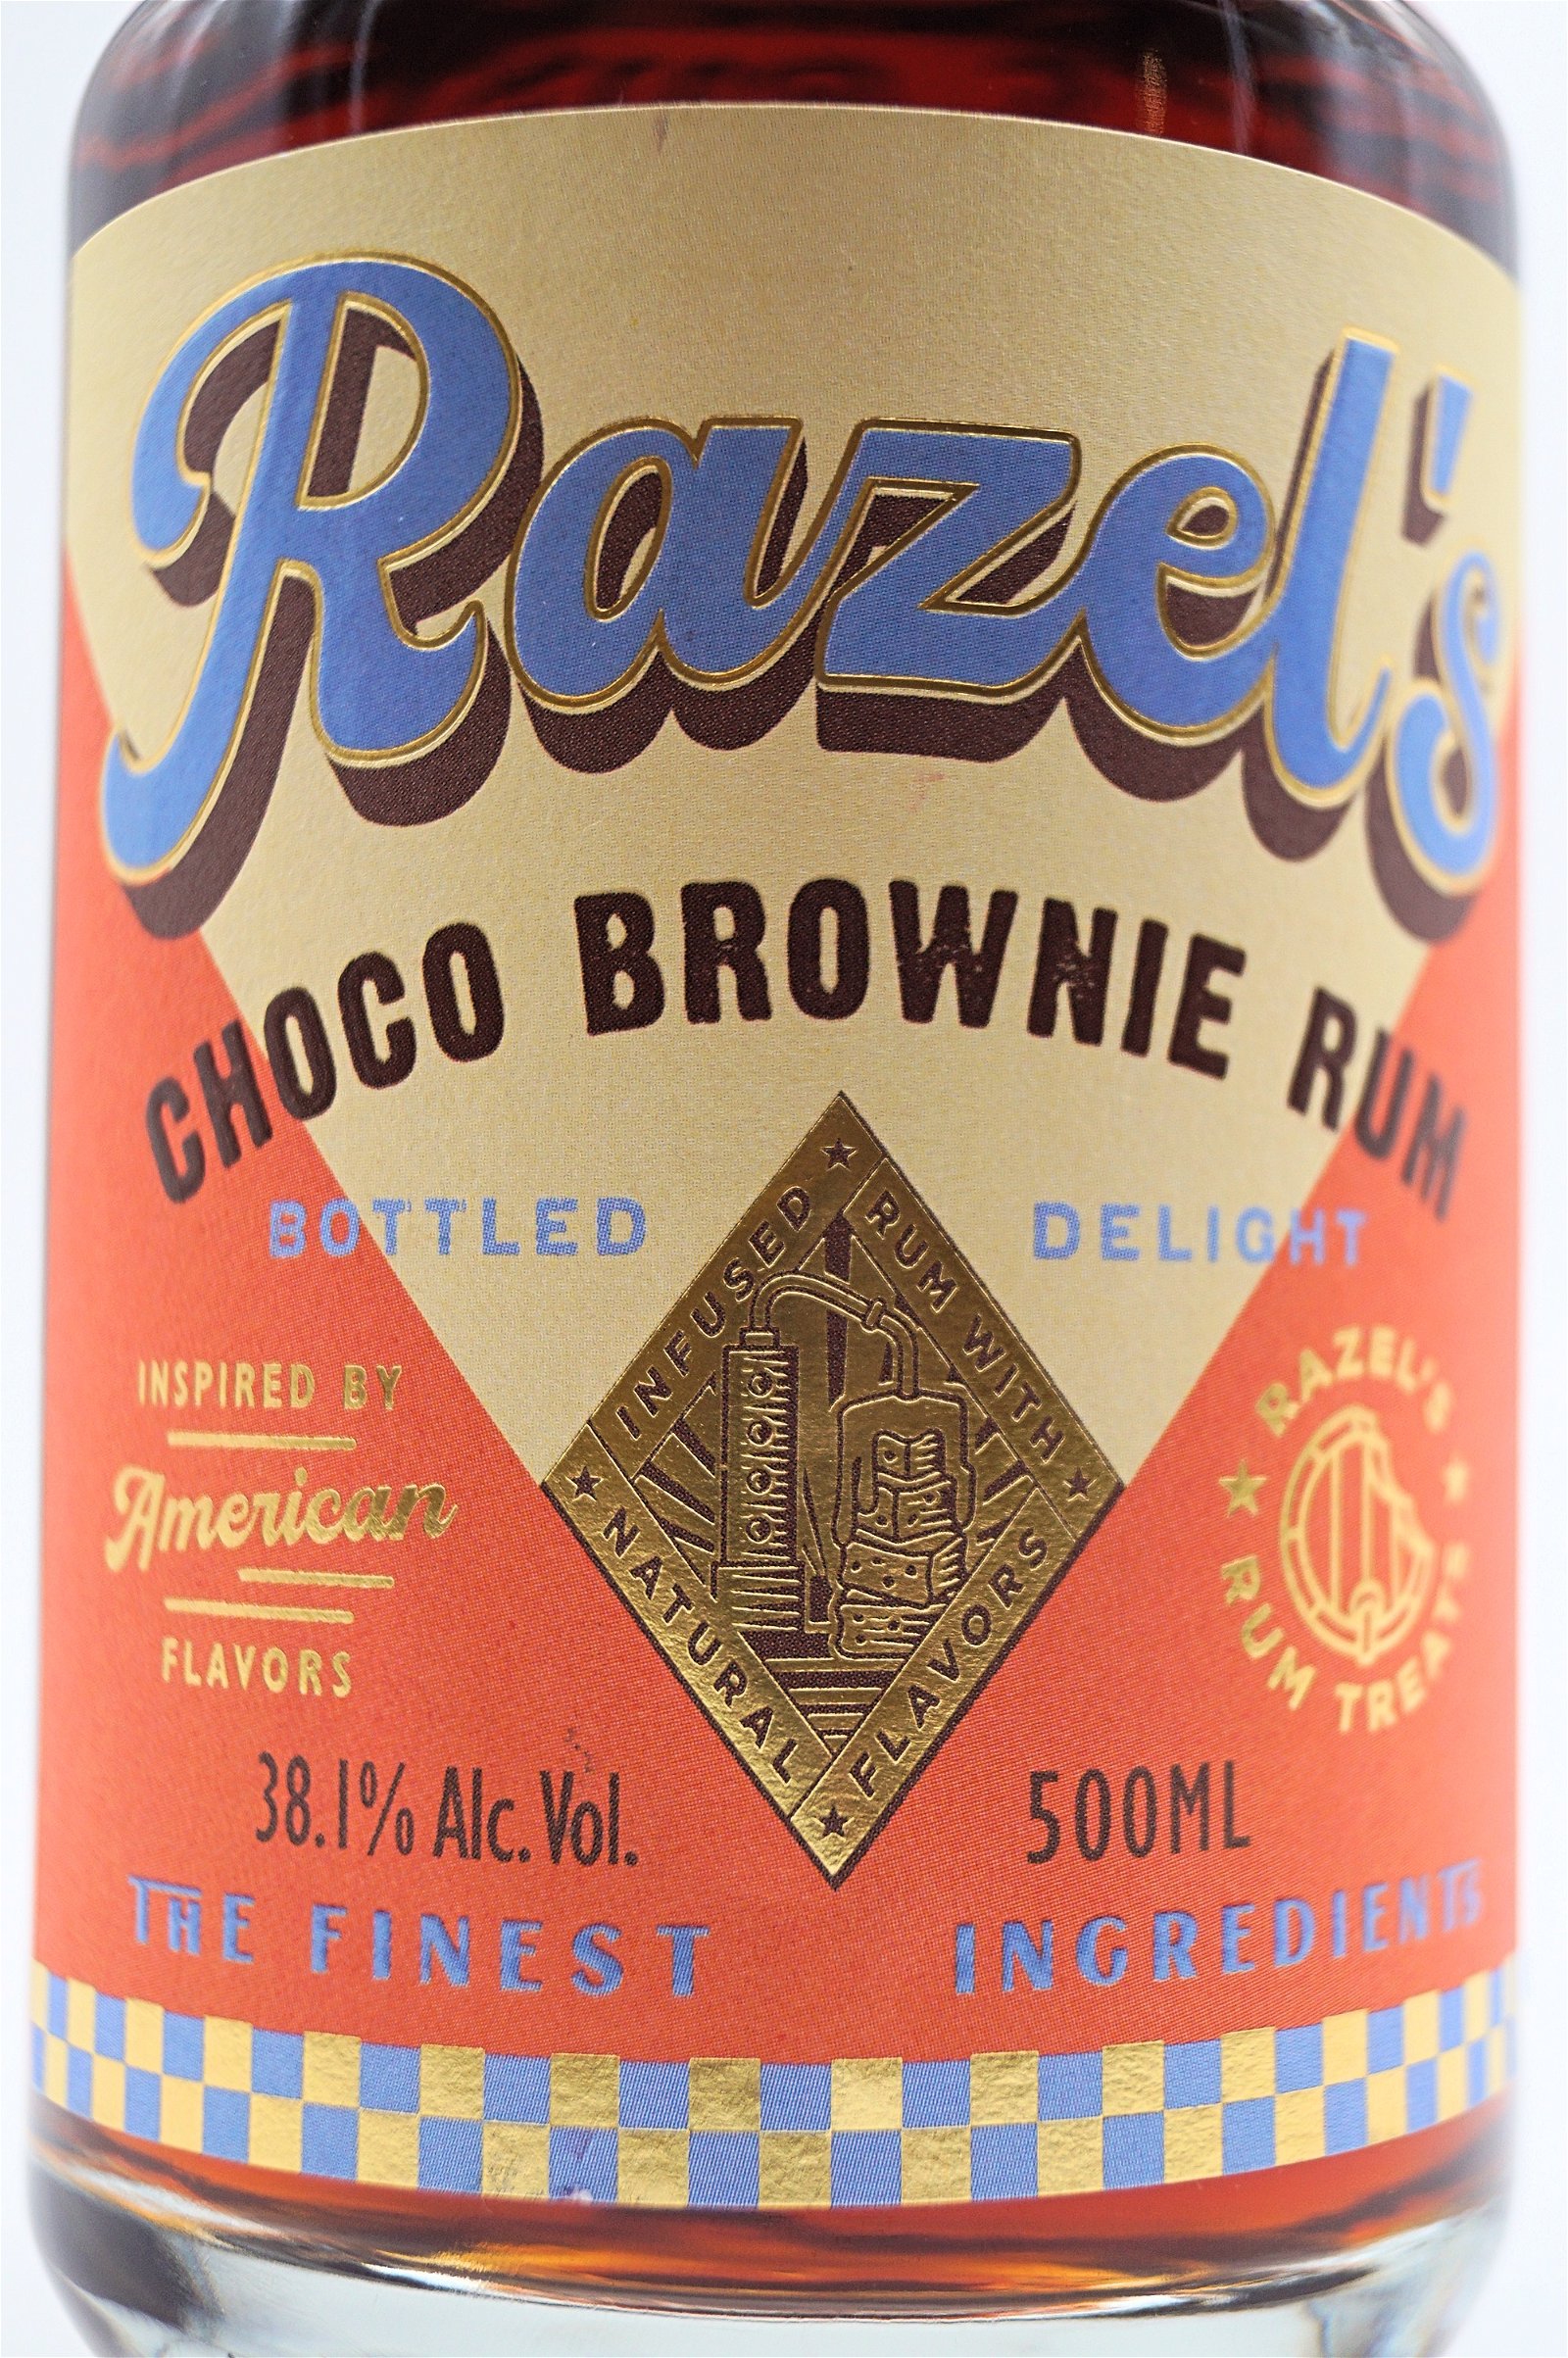 Choco Brownie Rum | LH16260